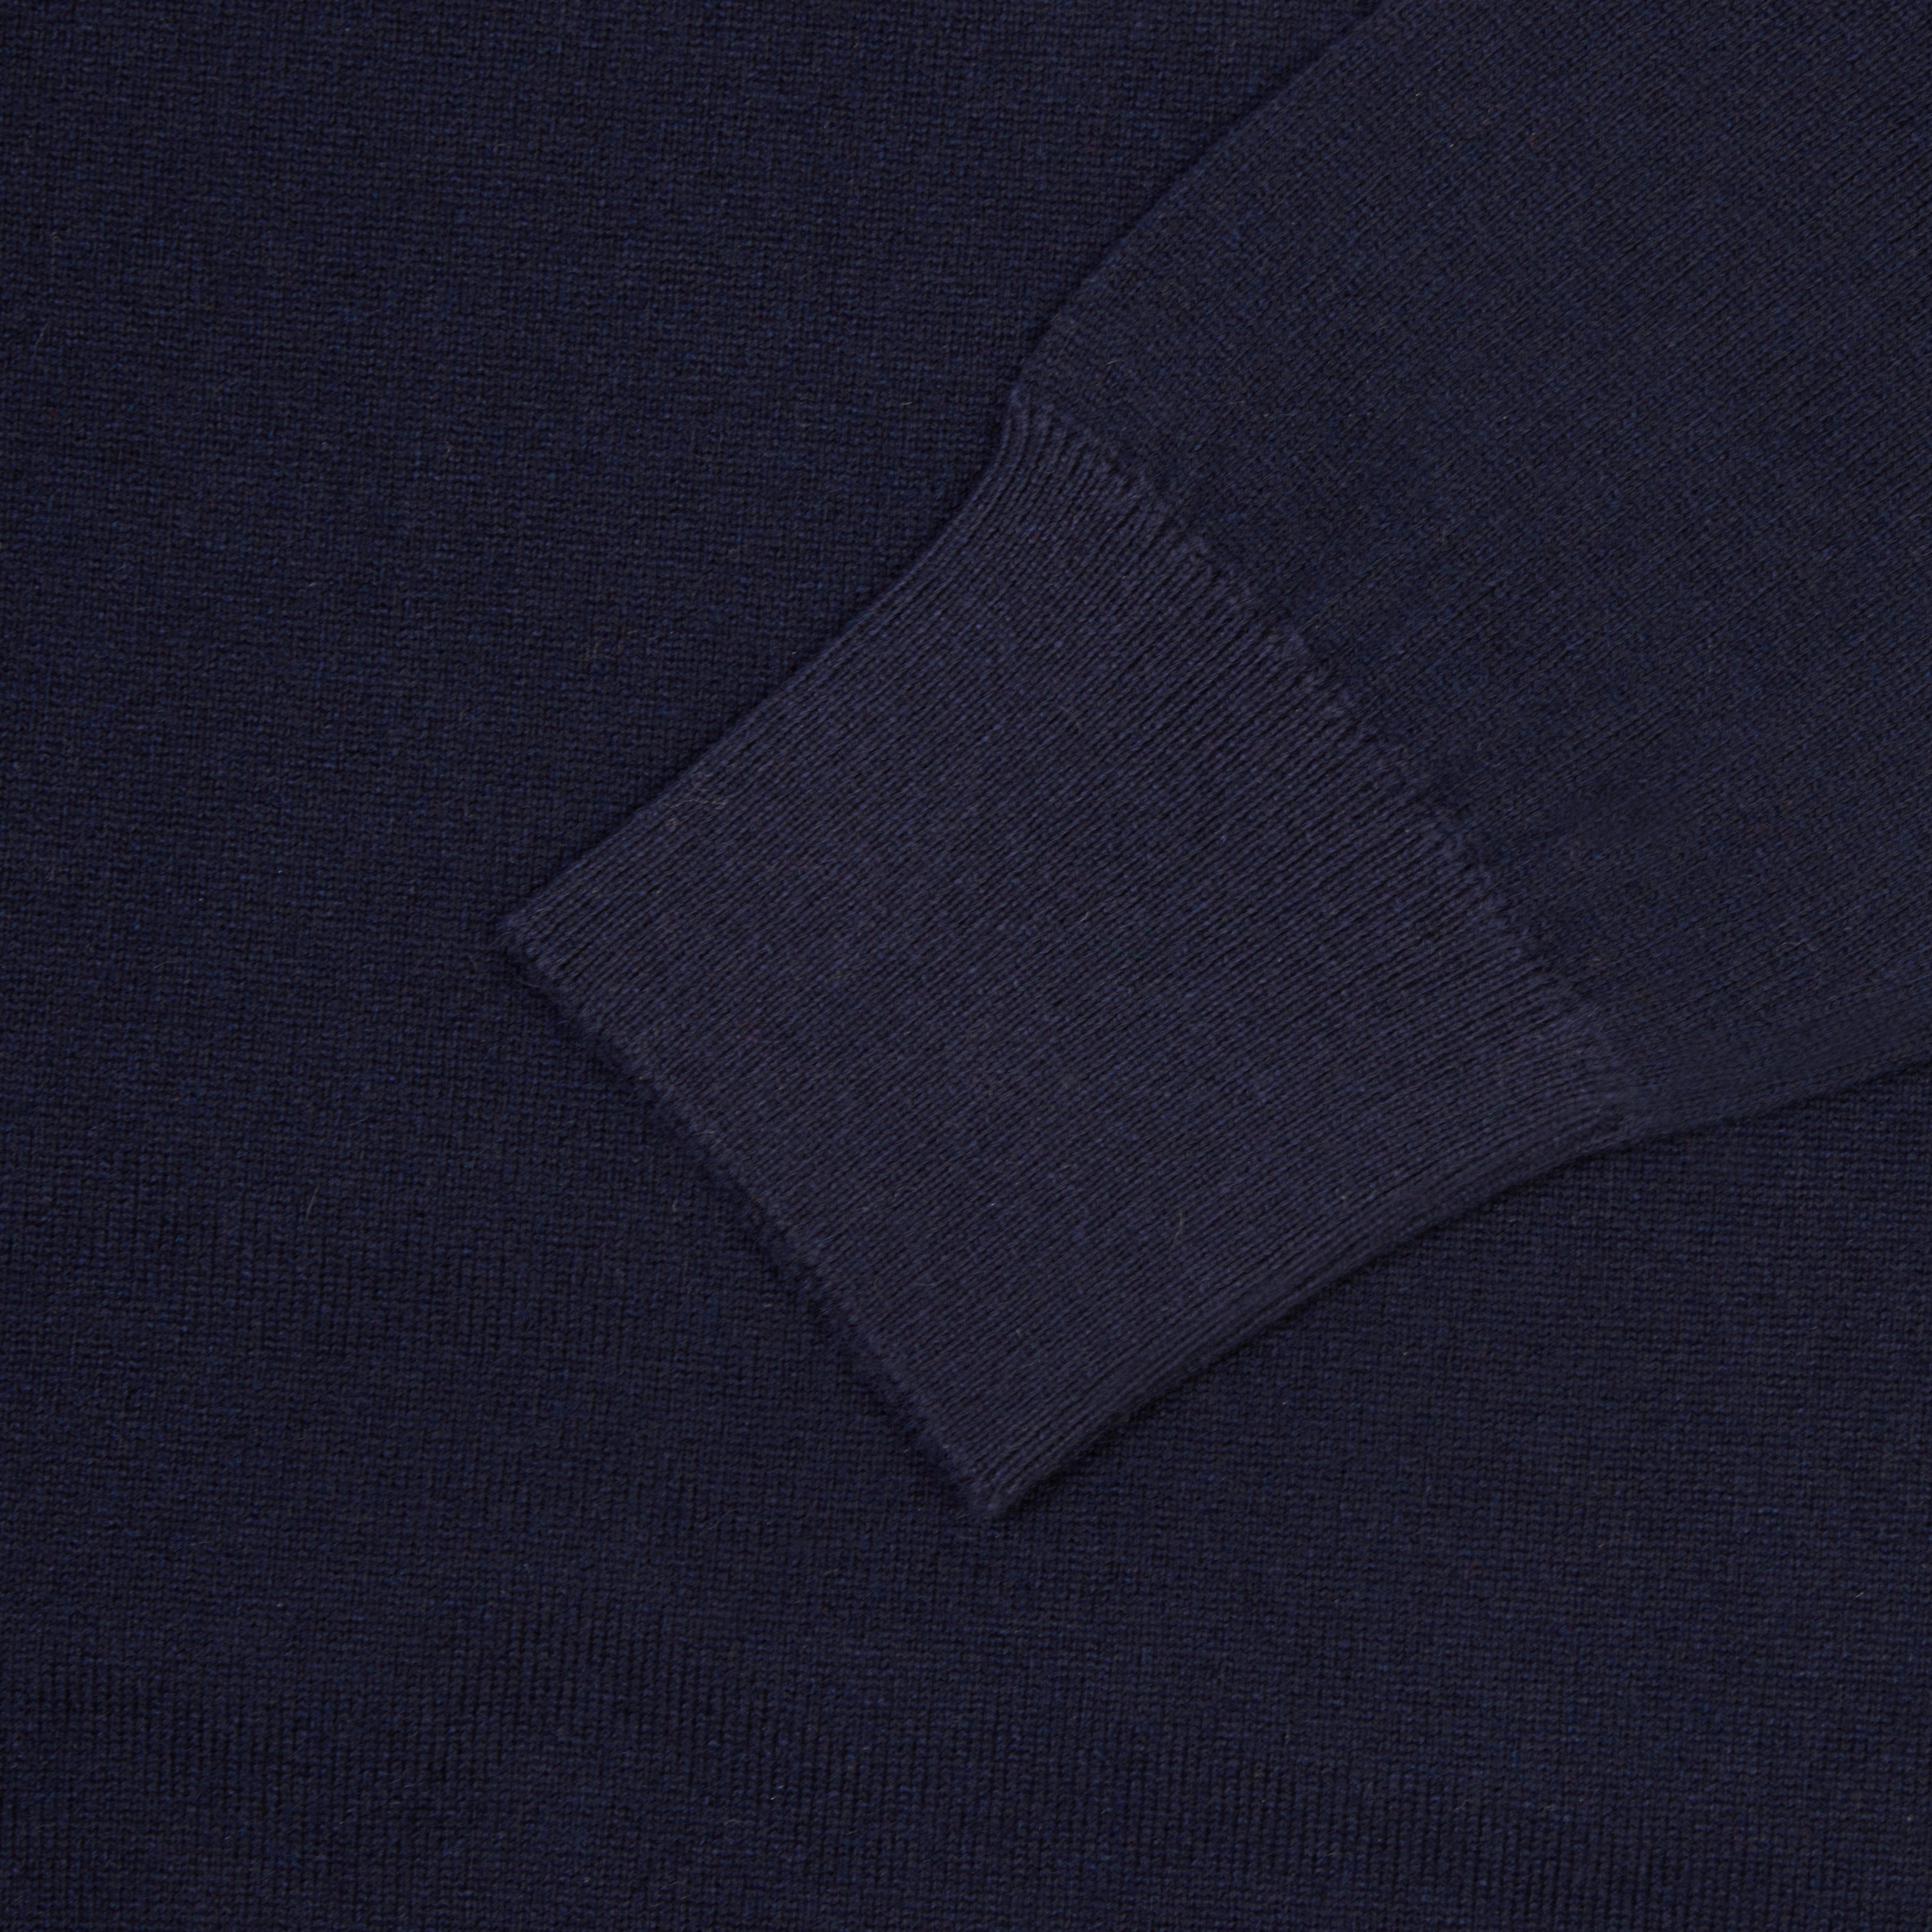 Cashmere cotton collegiate raglan sweatshirt in navy